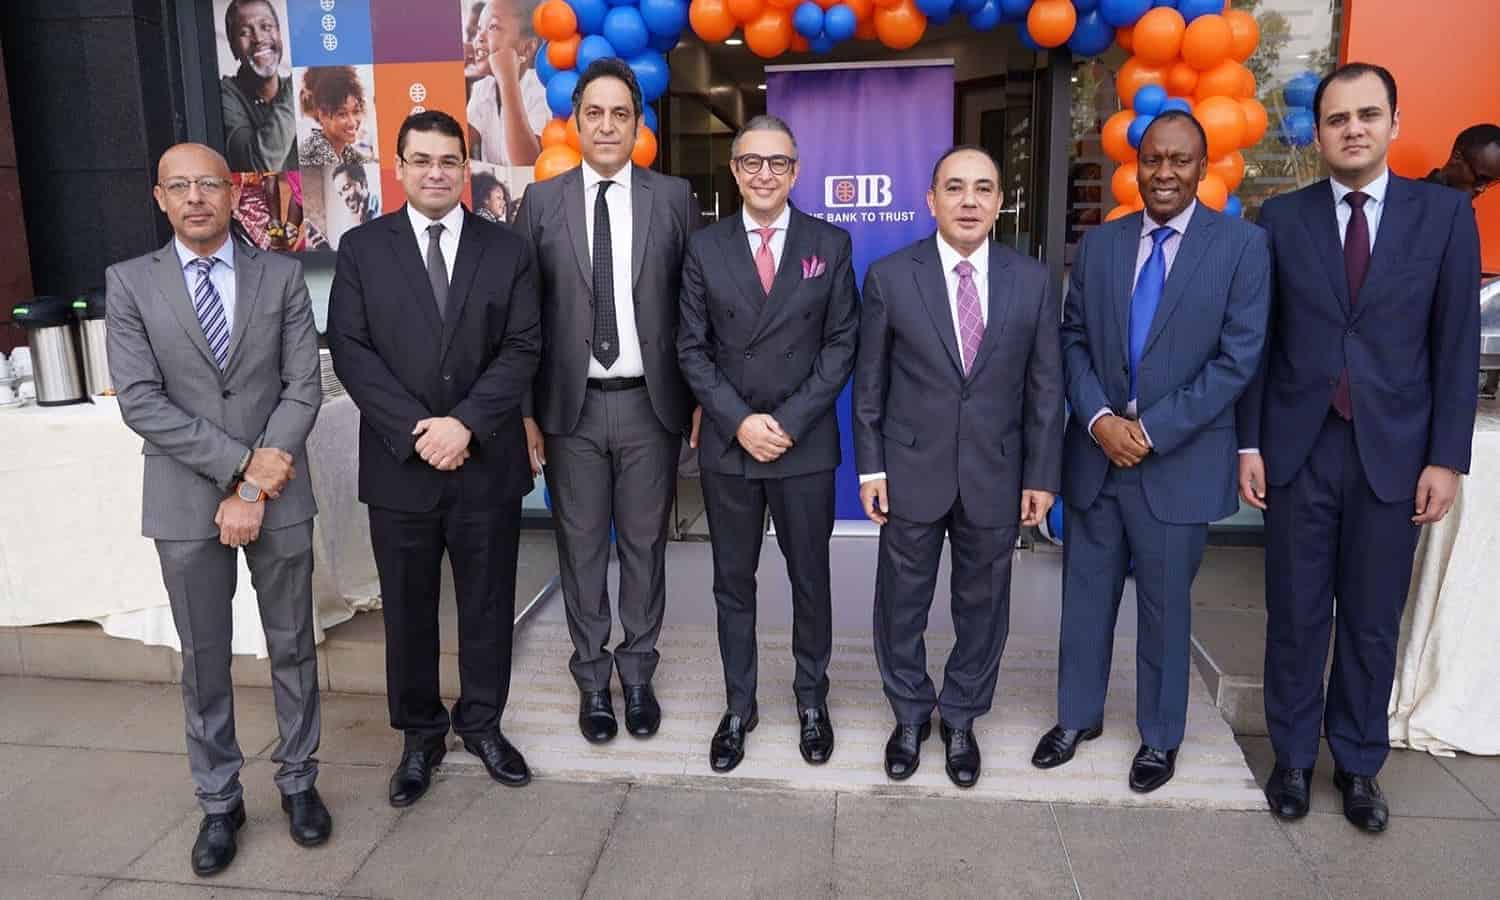 CIB opens first branch in Kenya